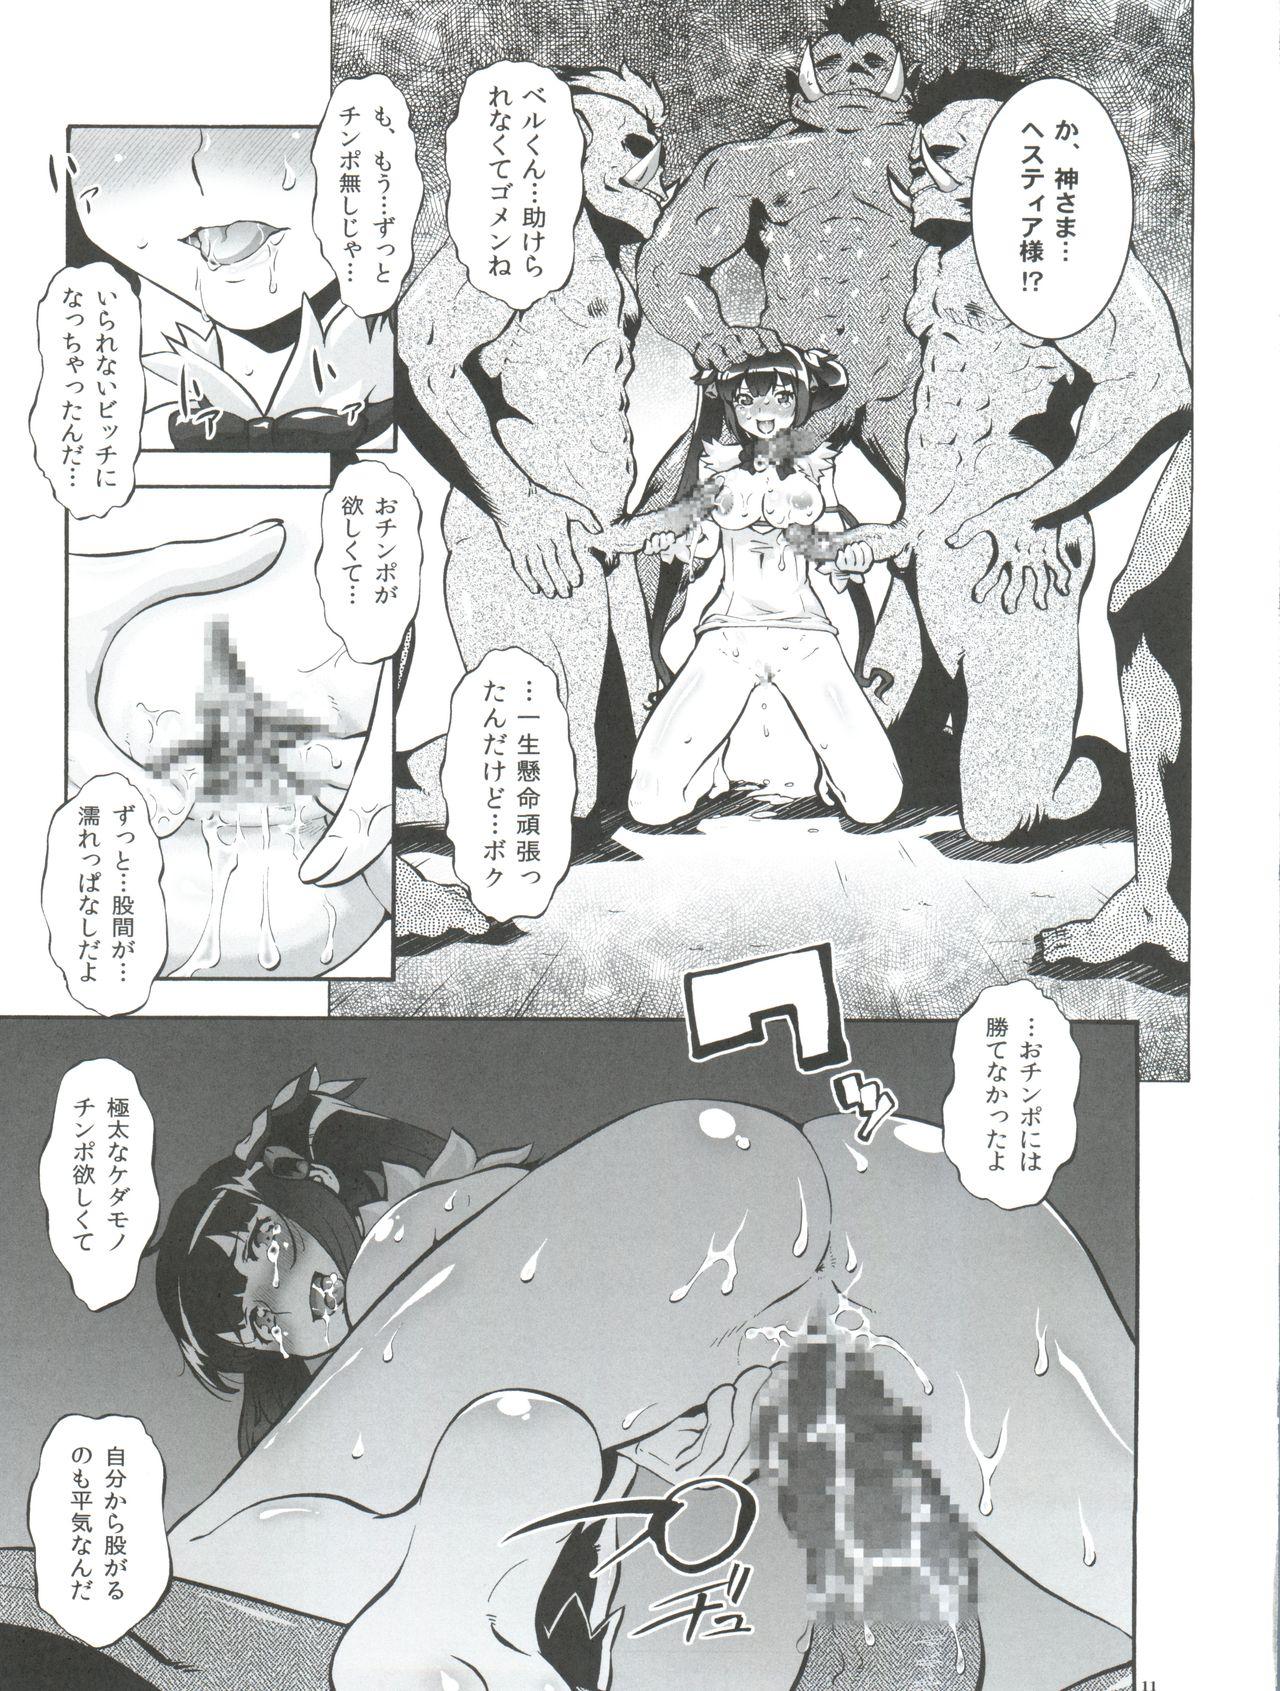  Danmachi - Dungeon ni deai o motomeru no wa machigatteiru darou ka Corrida - Page 11